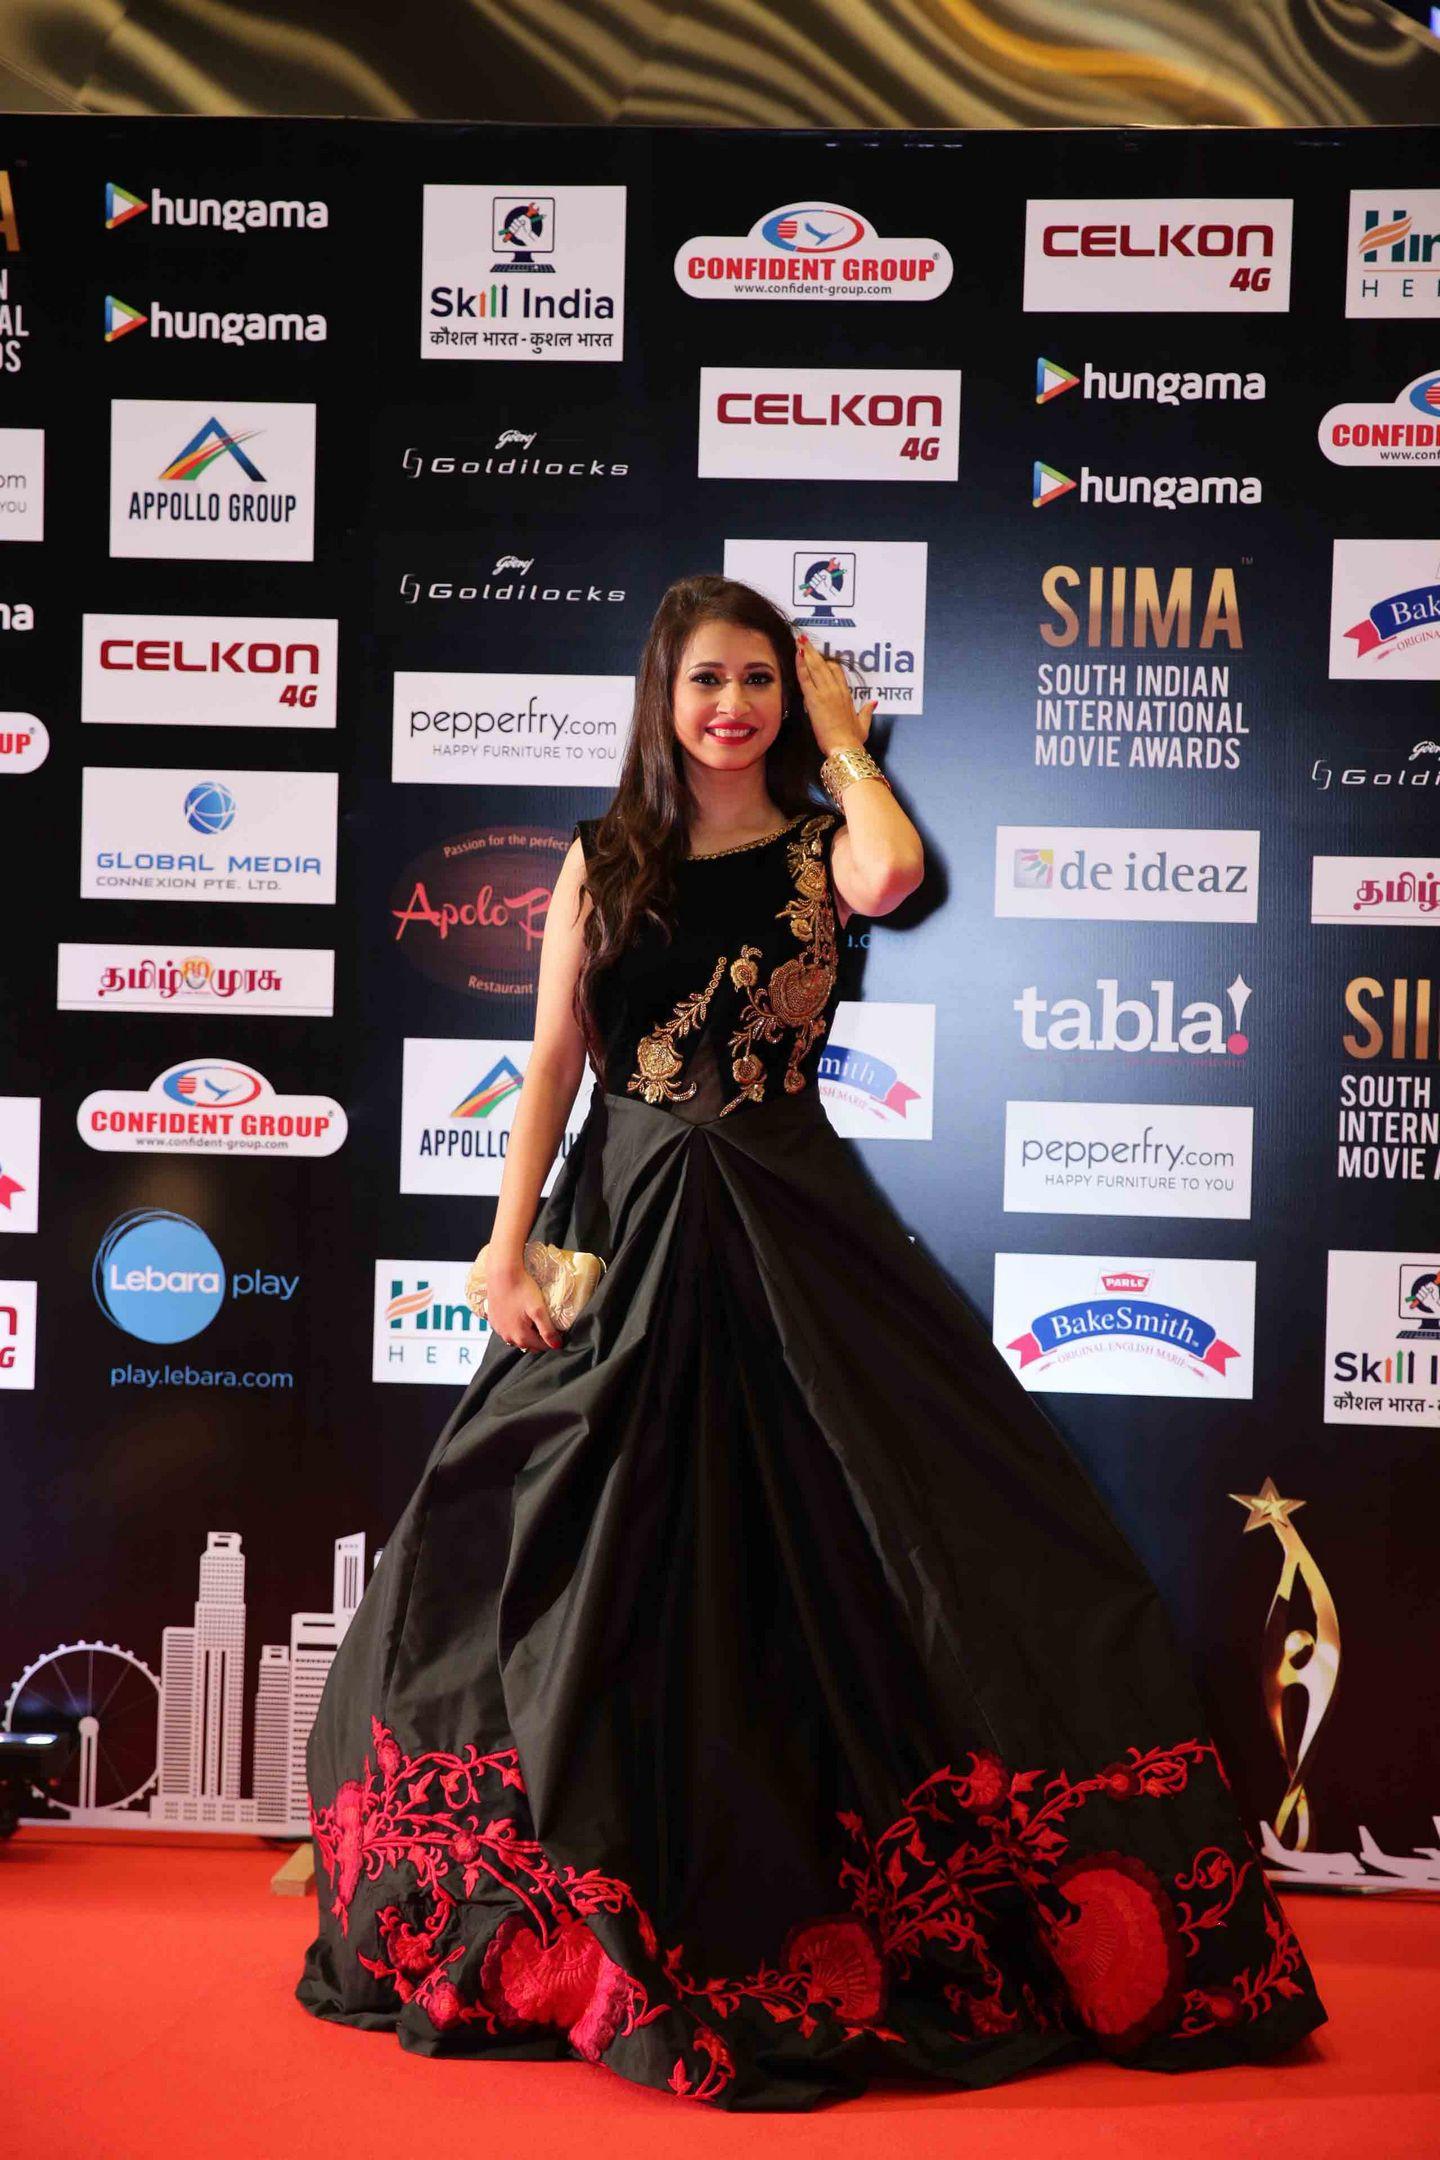 Siima Awards 2016 Images